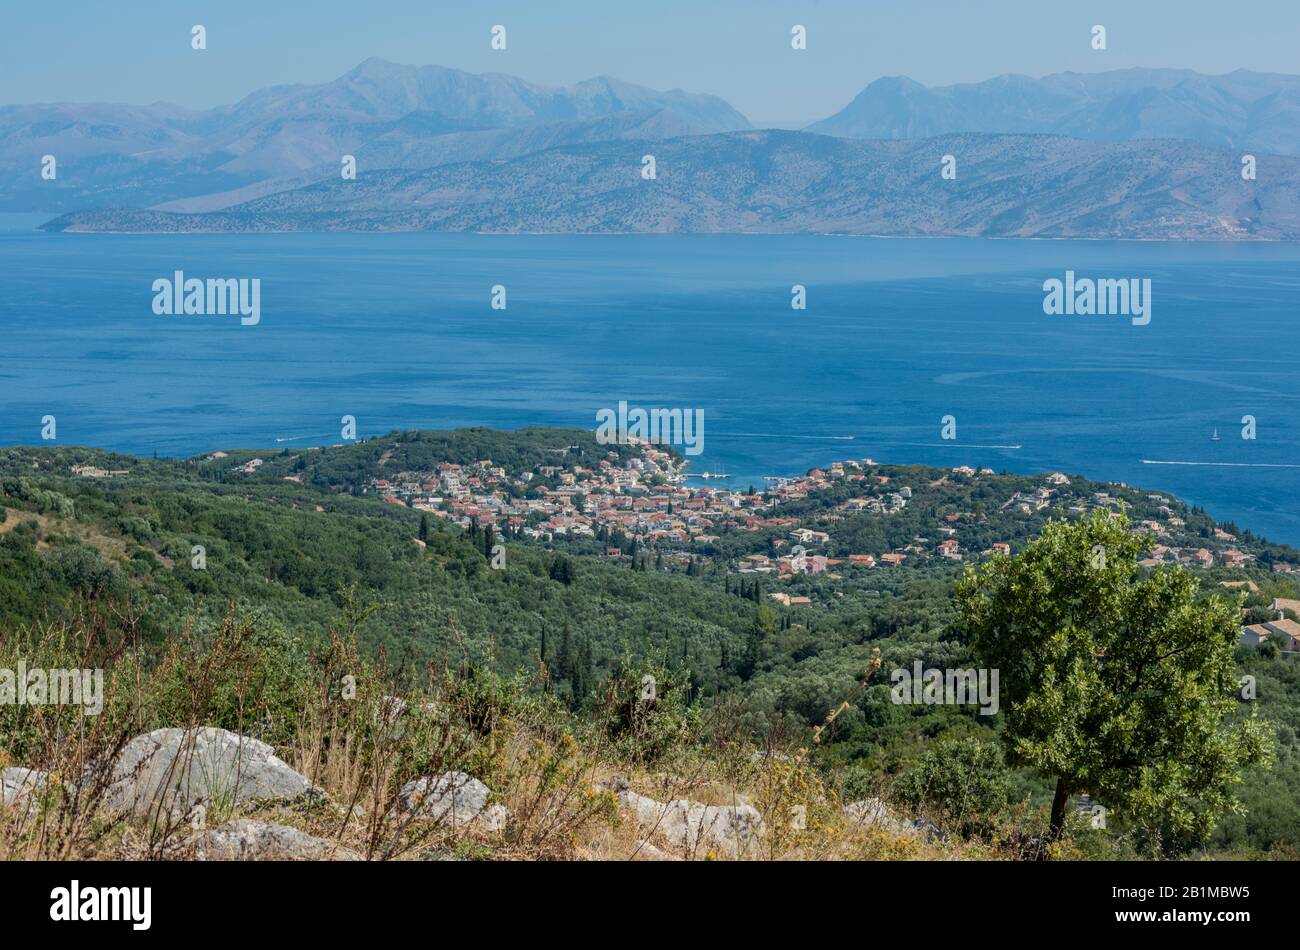 Vue sur les collines ou les montagnes au-dessus de la ville grecque ou du village de kassiopi dans les montagnes grecques. Banque D'Images